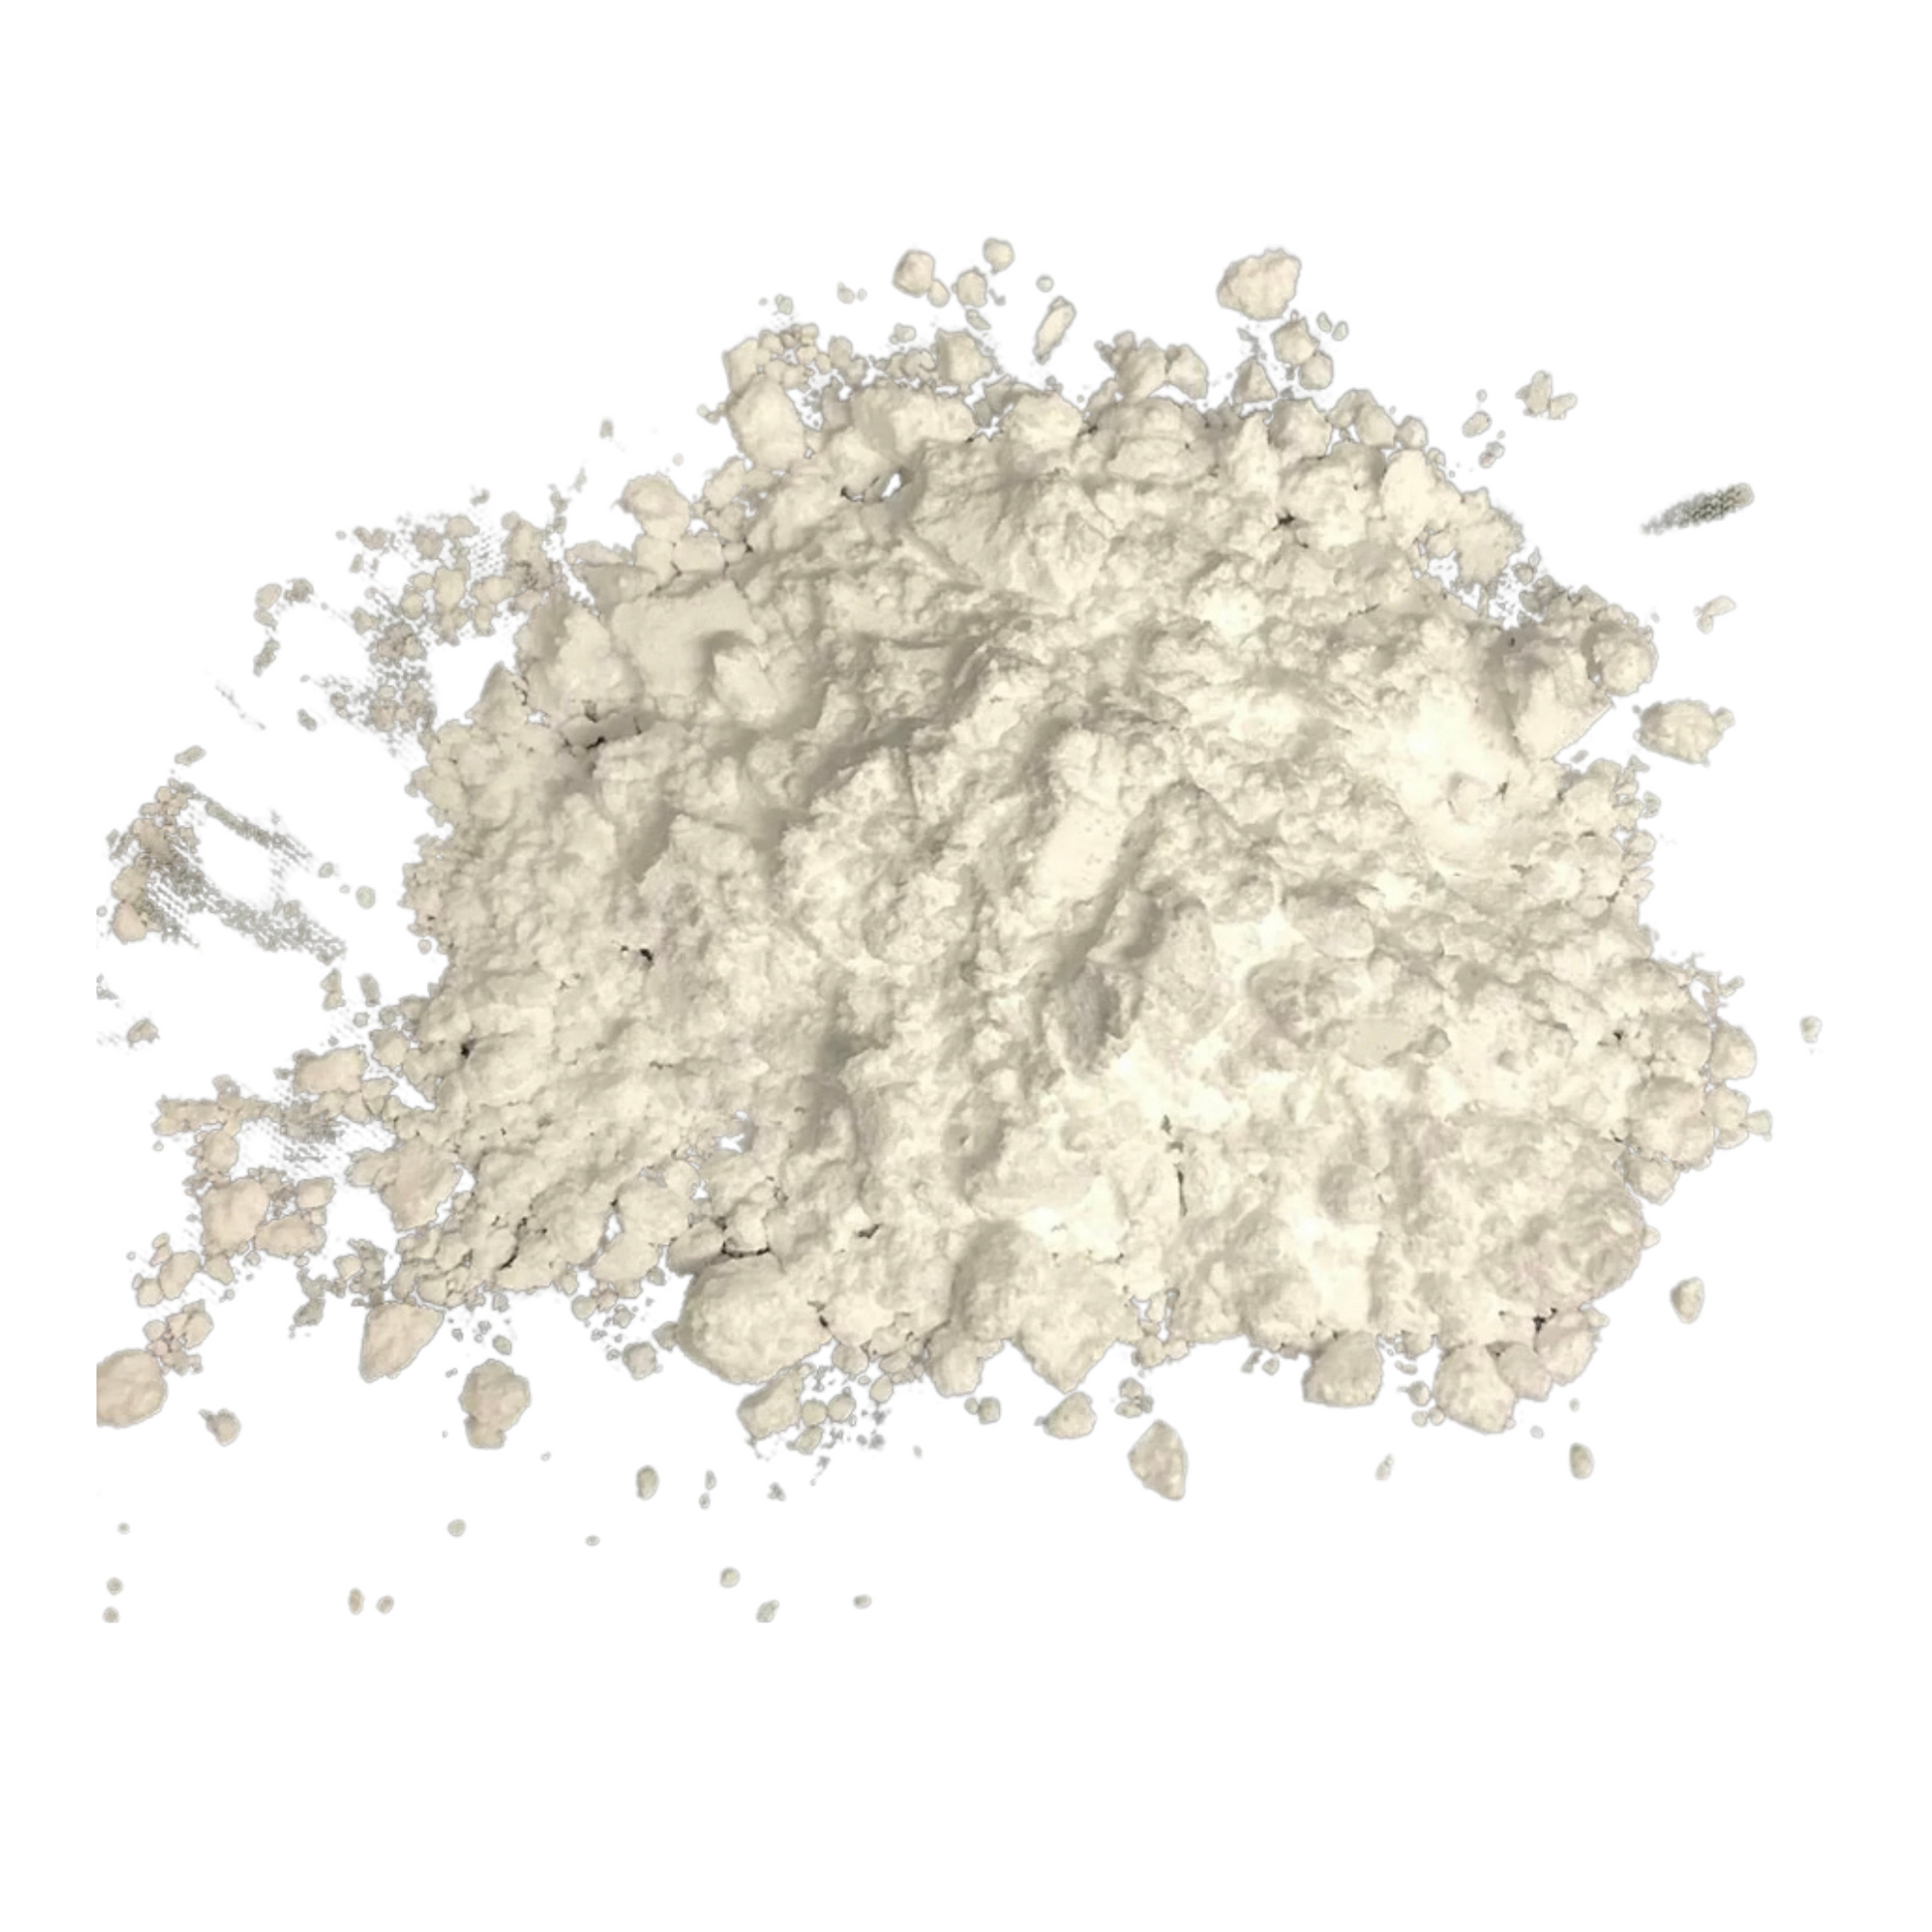 Pure Xanthan Gum Powder - Gluten-Free Thickener and Stabilizer 8oz. - dmsostore